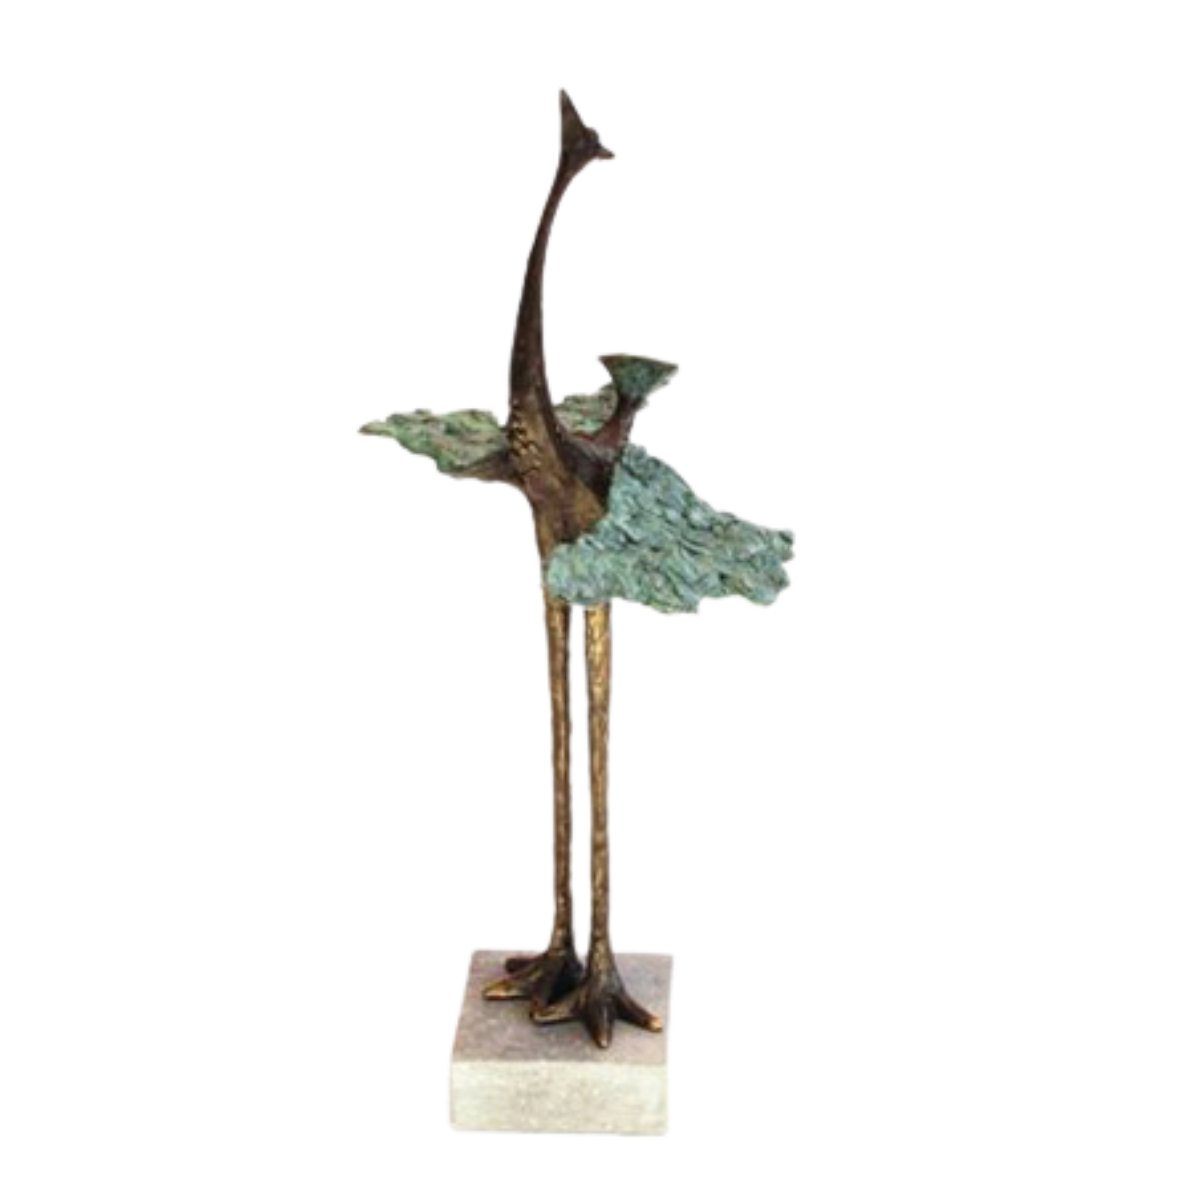 Ger van Tankeren - De paradijsvogel | Sculptuur